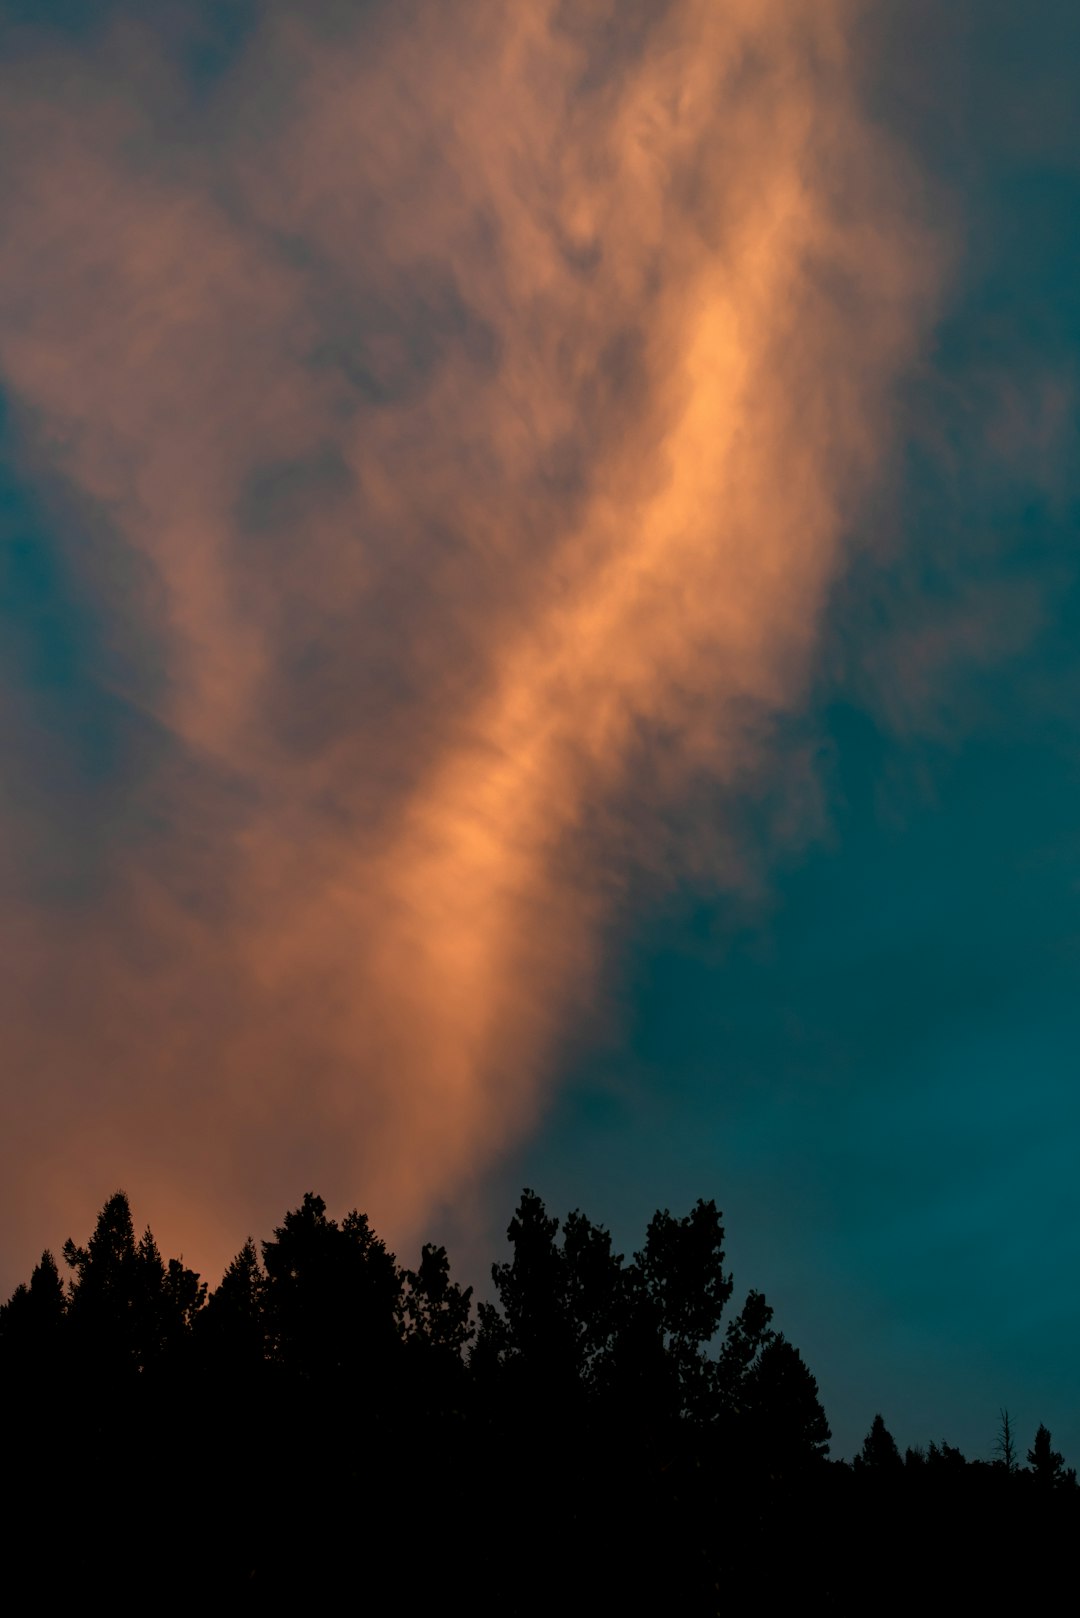 tree silhouette under orange clouds